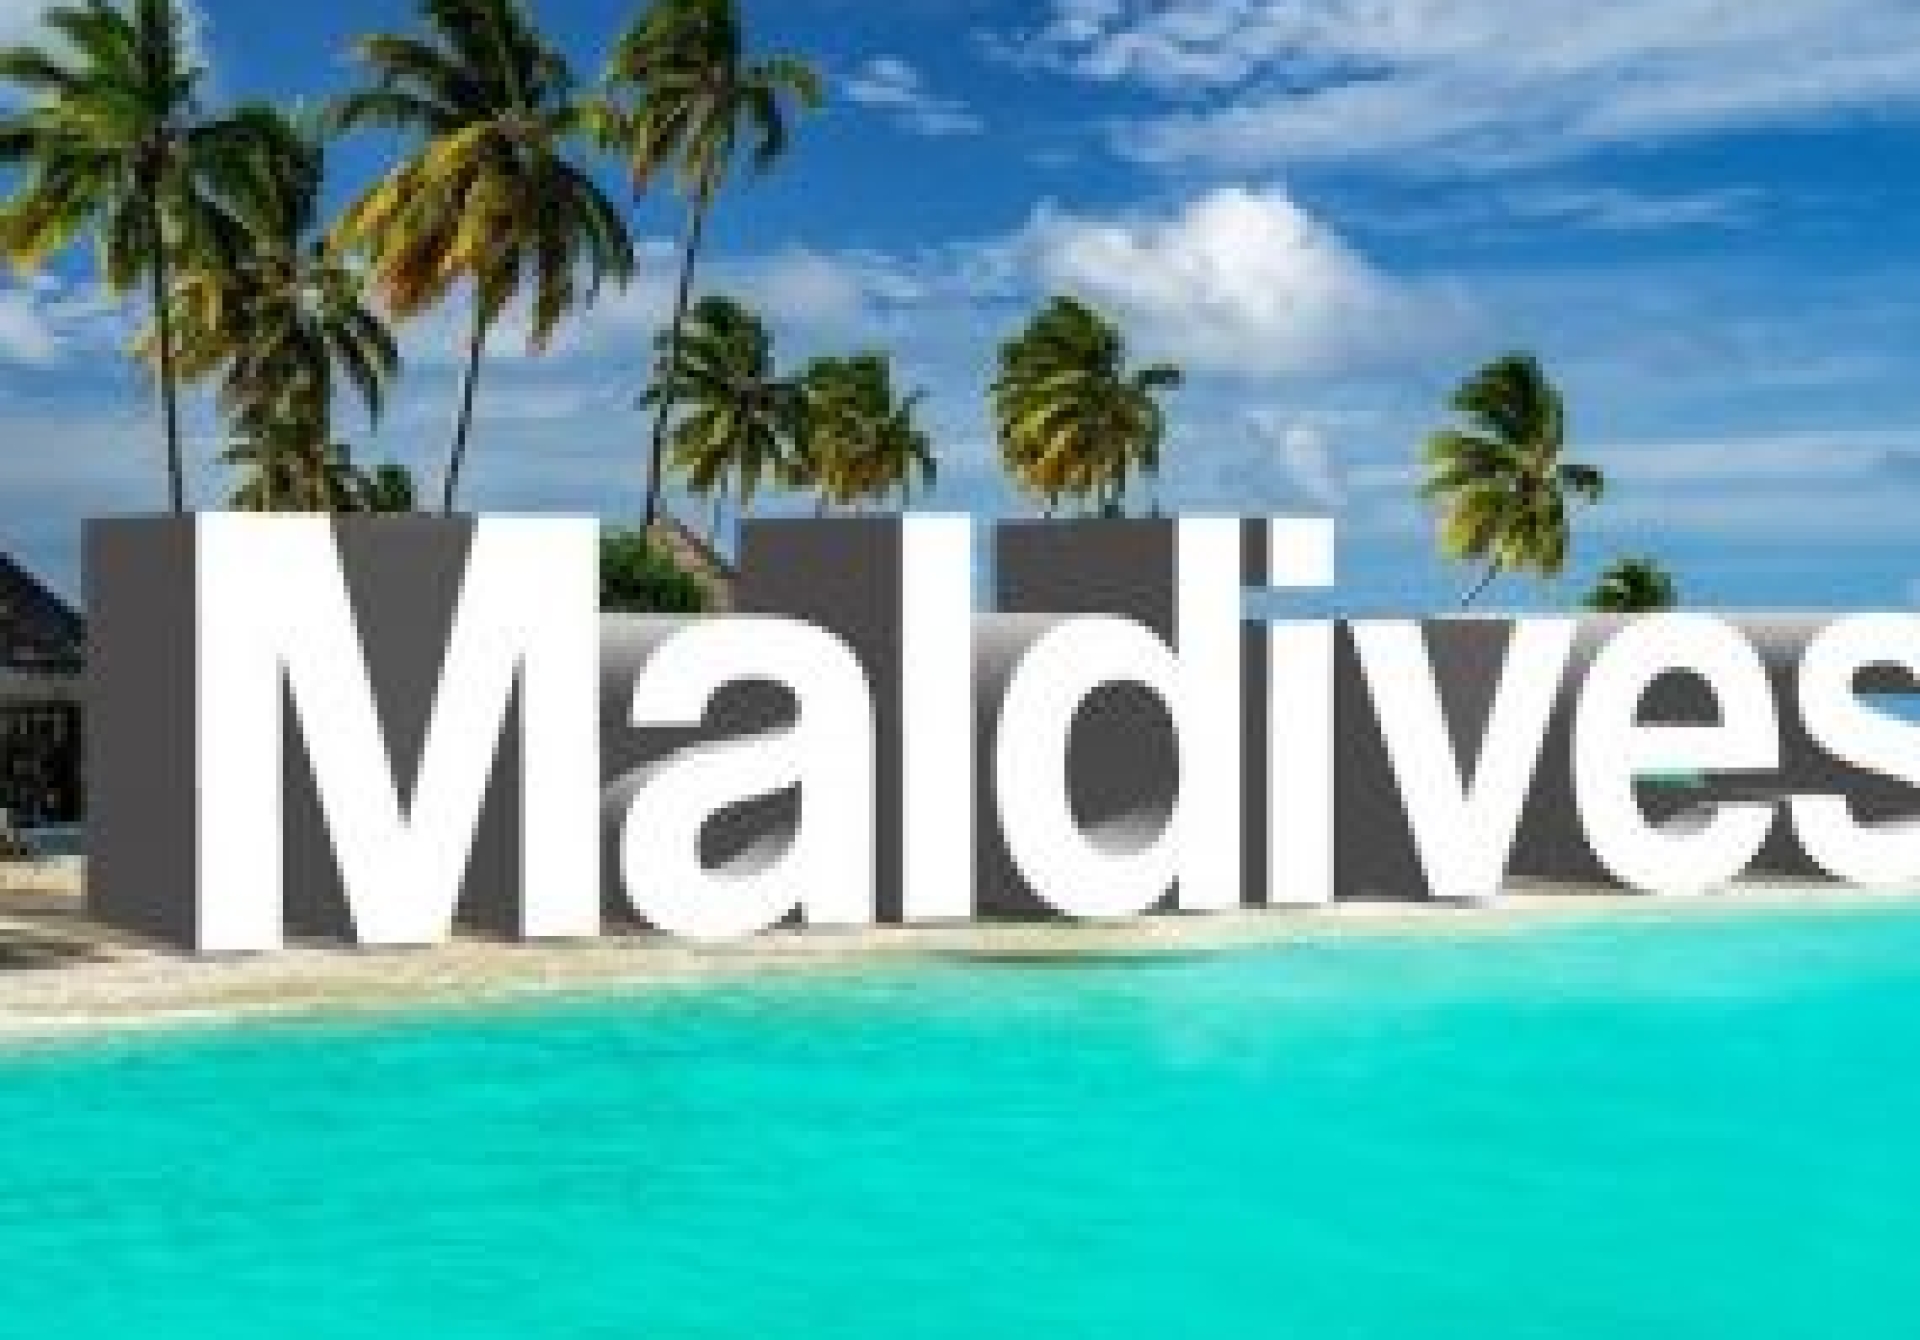 Мальдивы поучили главную премию World Travel Awards 2020 (2)